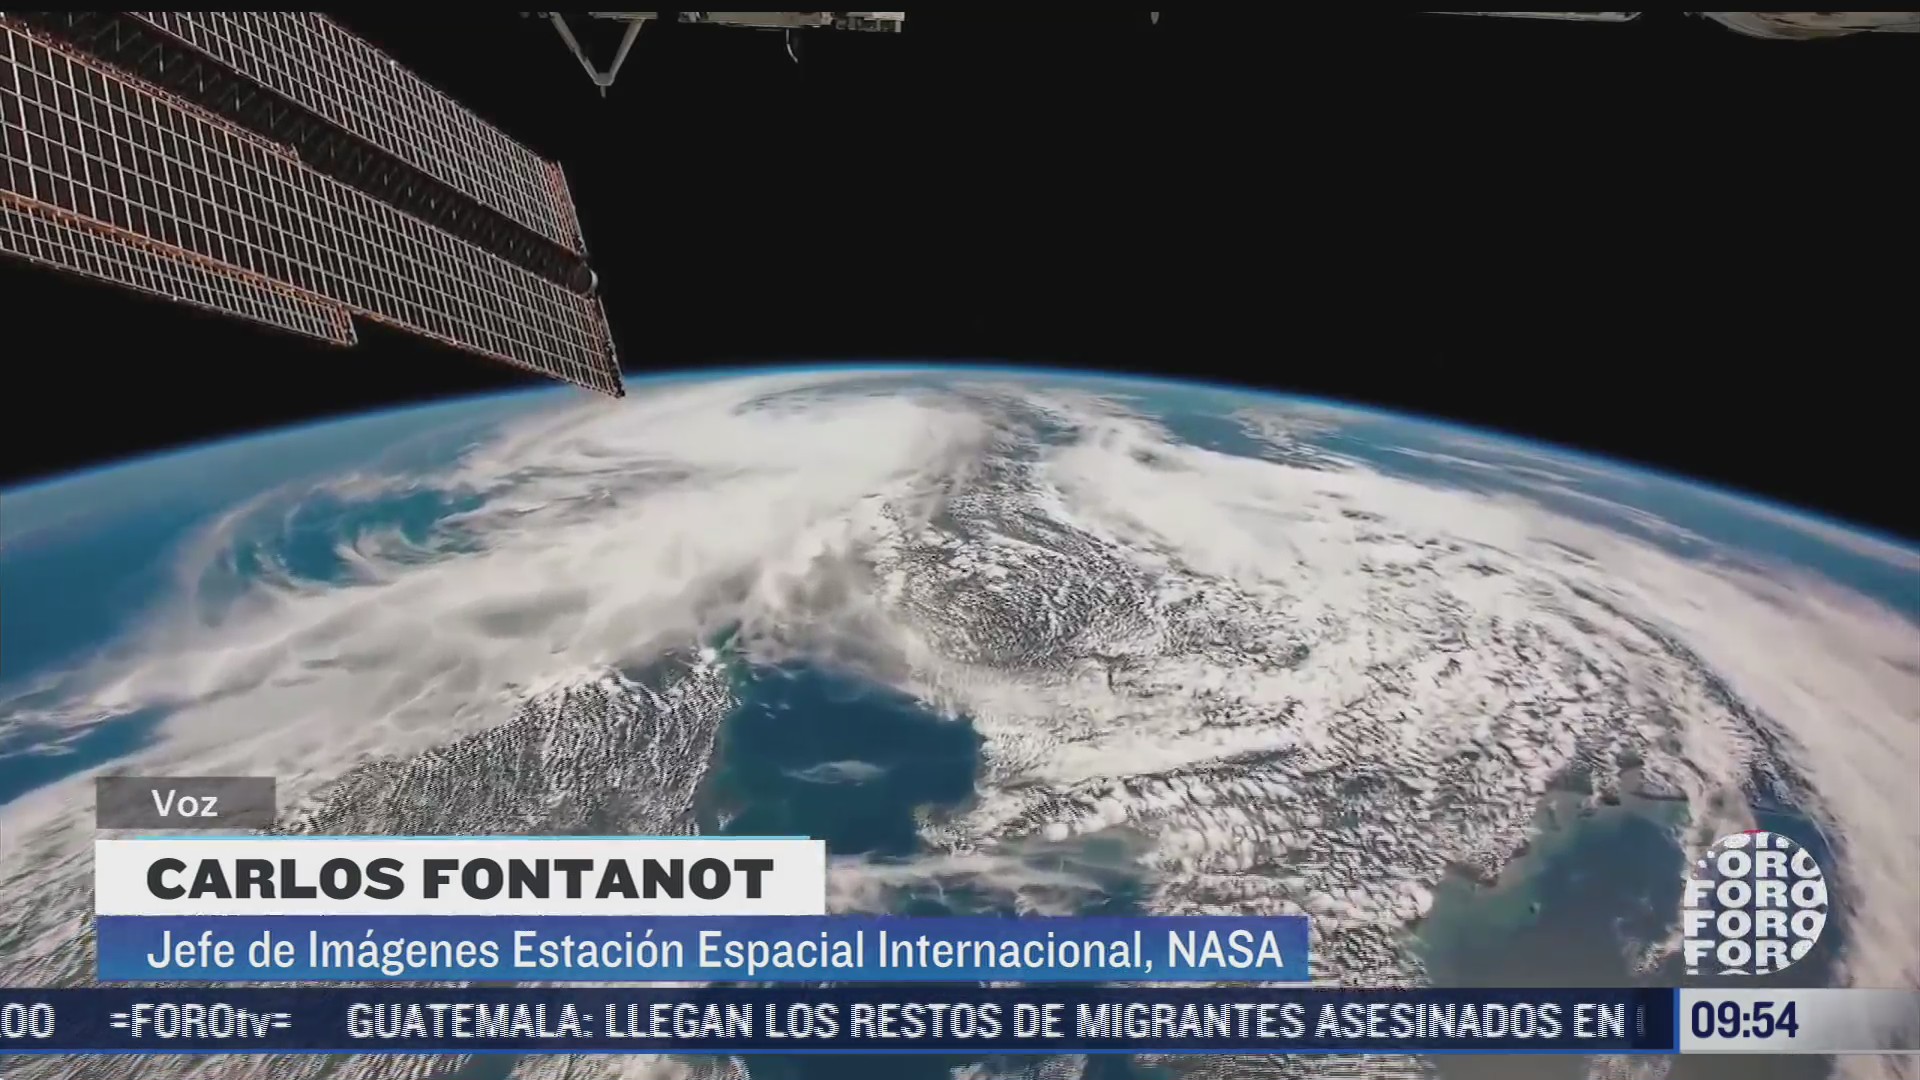 mexicano es guardian de millones de fotografias de la estacion espacial internacional